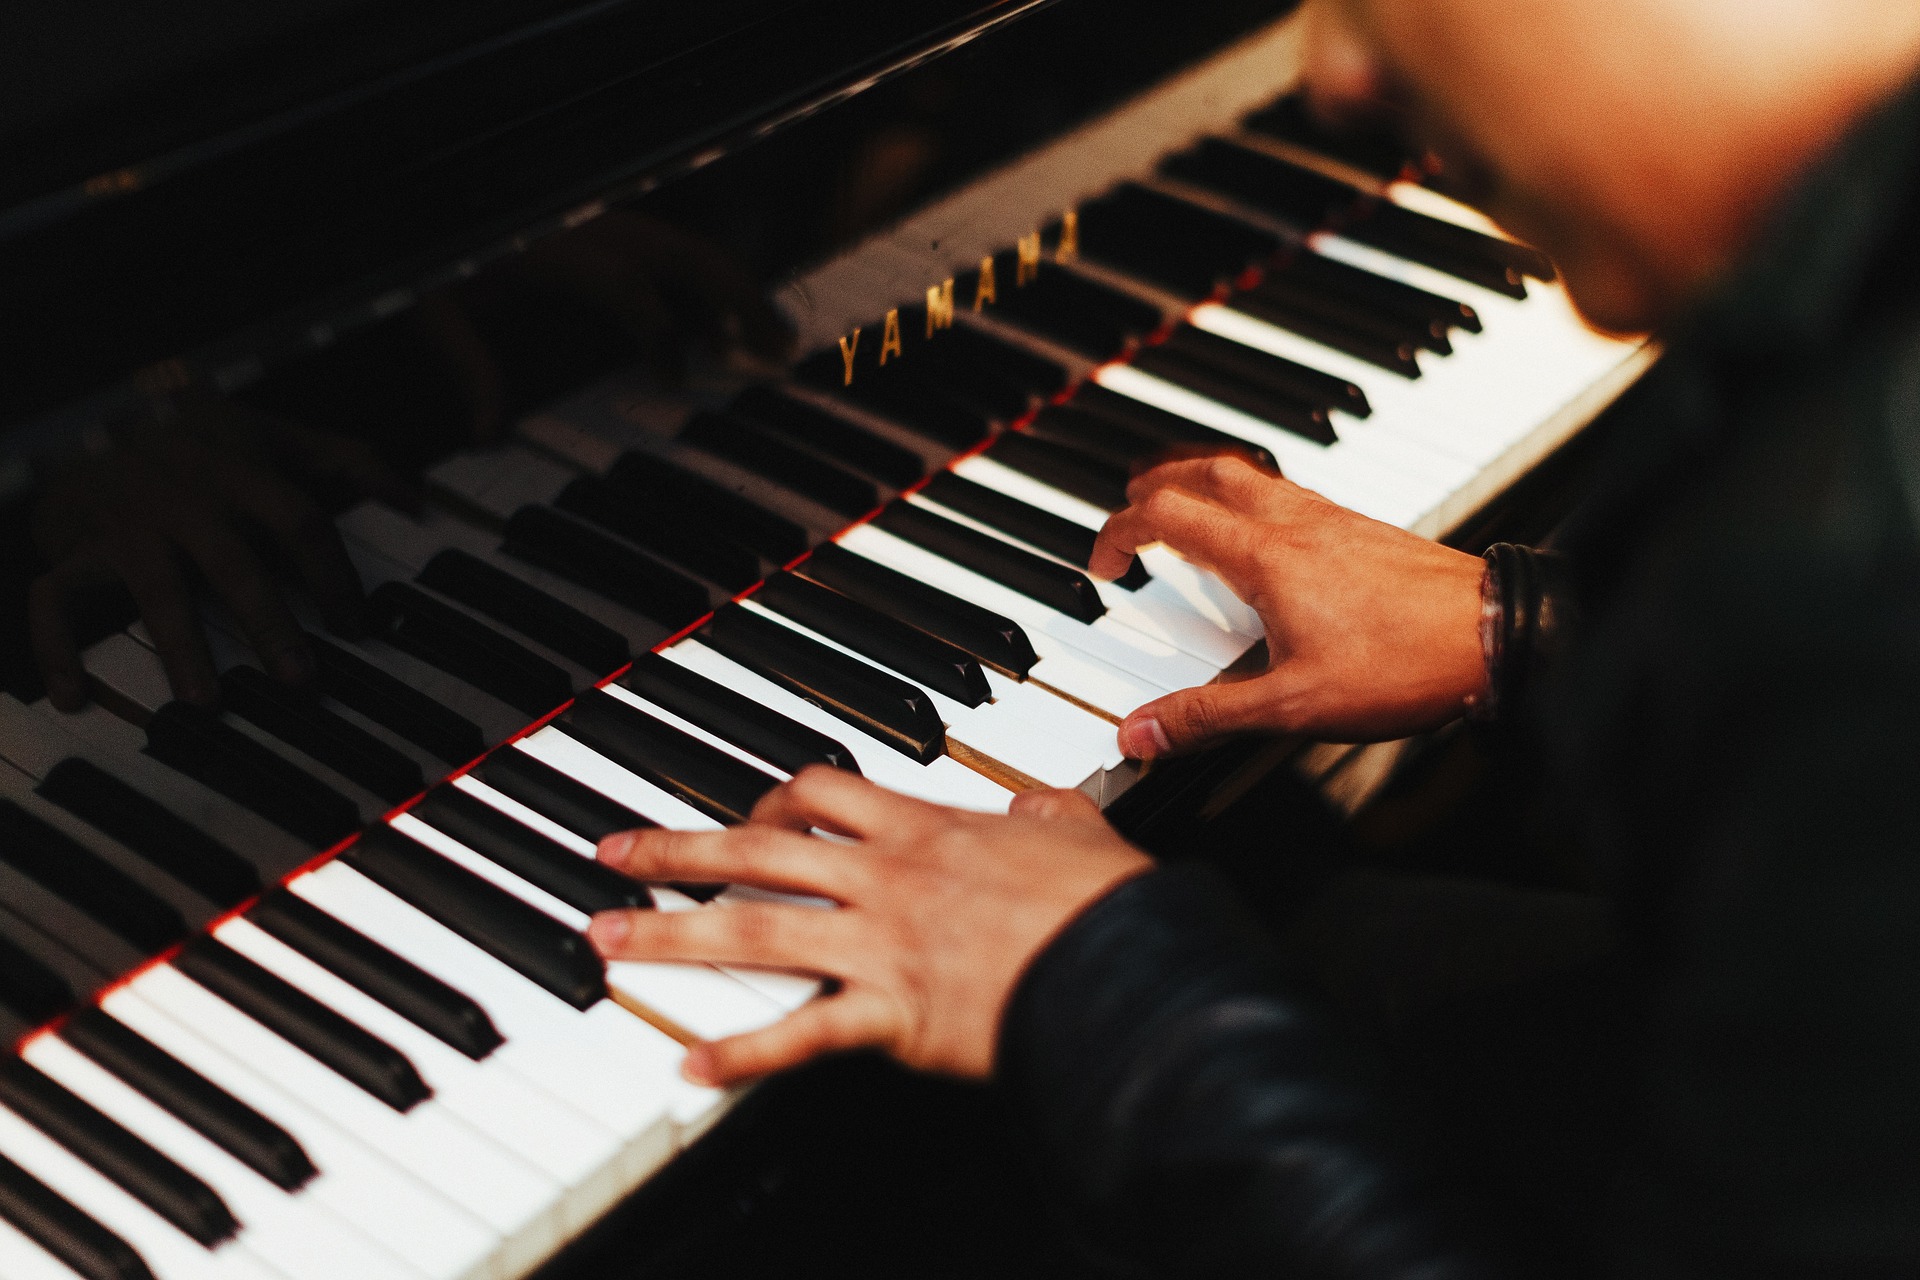 Chiusi della Verna prendono il via i corsi internazionali di perfezionamento musicale 2021